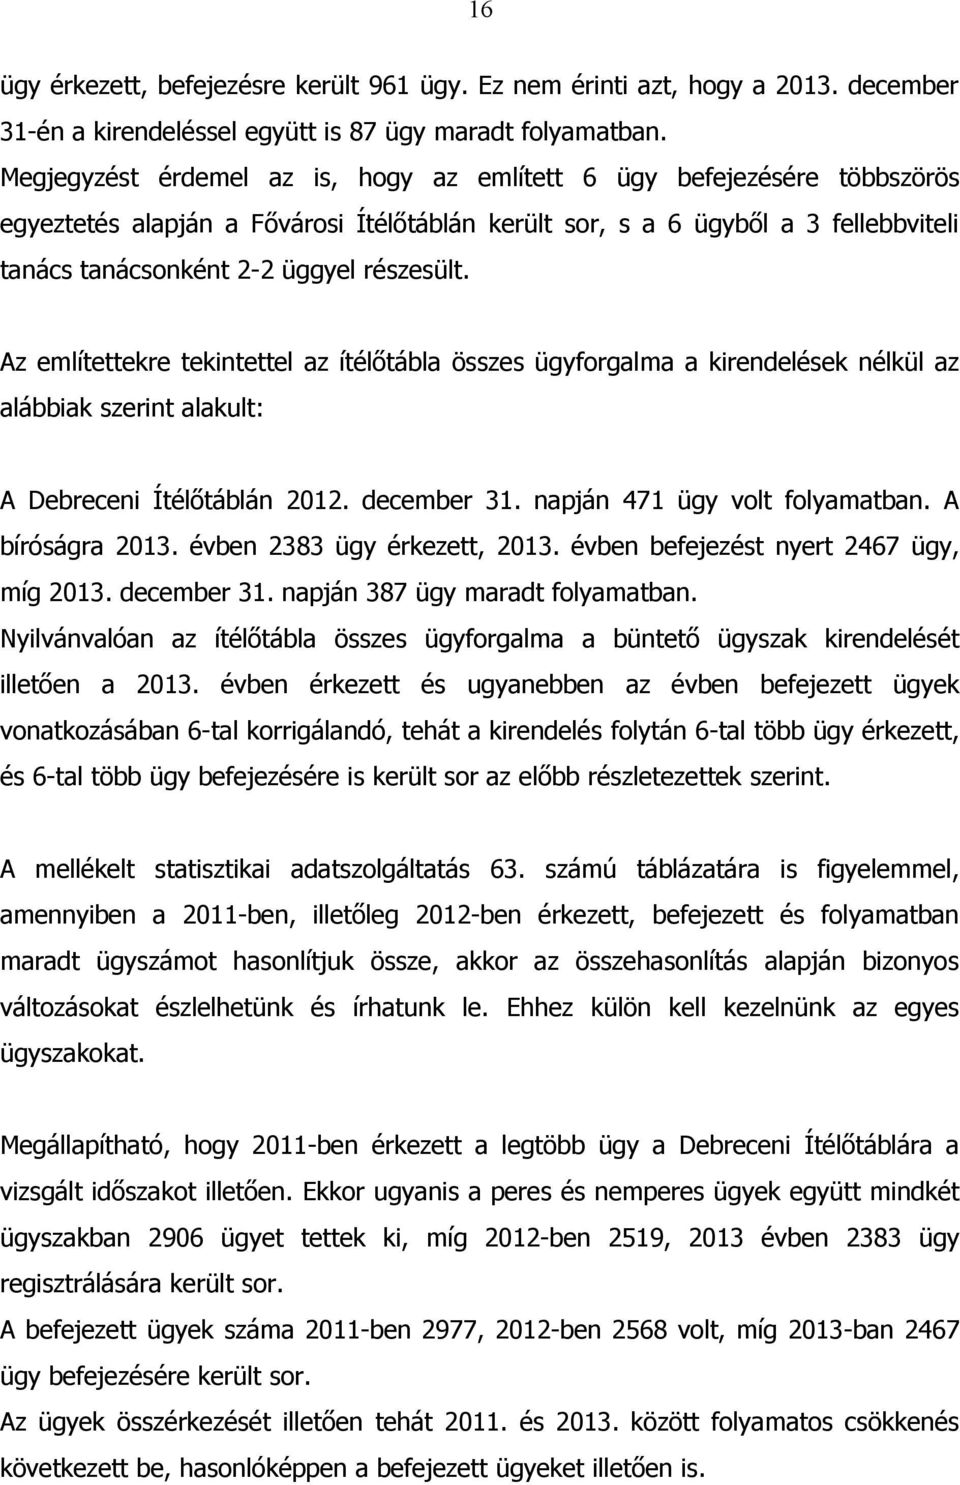 Az említettekre tekintettel az ítélőtábla összes ügyforgalma a kirendelések nélkül az alábbiak szerint alakult: A Debreceni Ítélőtáblán 2012. december 31. napján 471 ügy volt folyamatban.